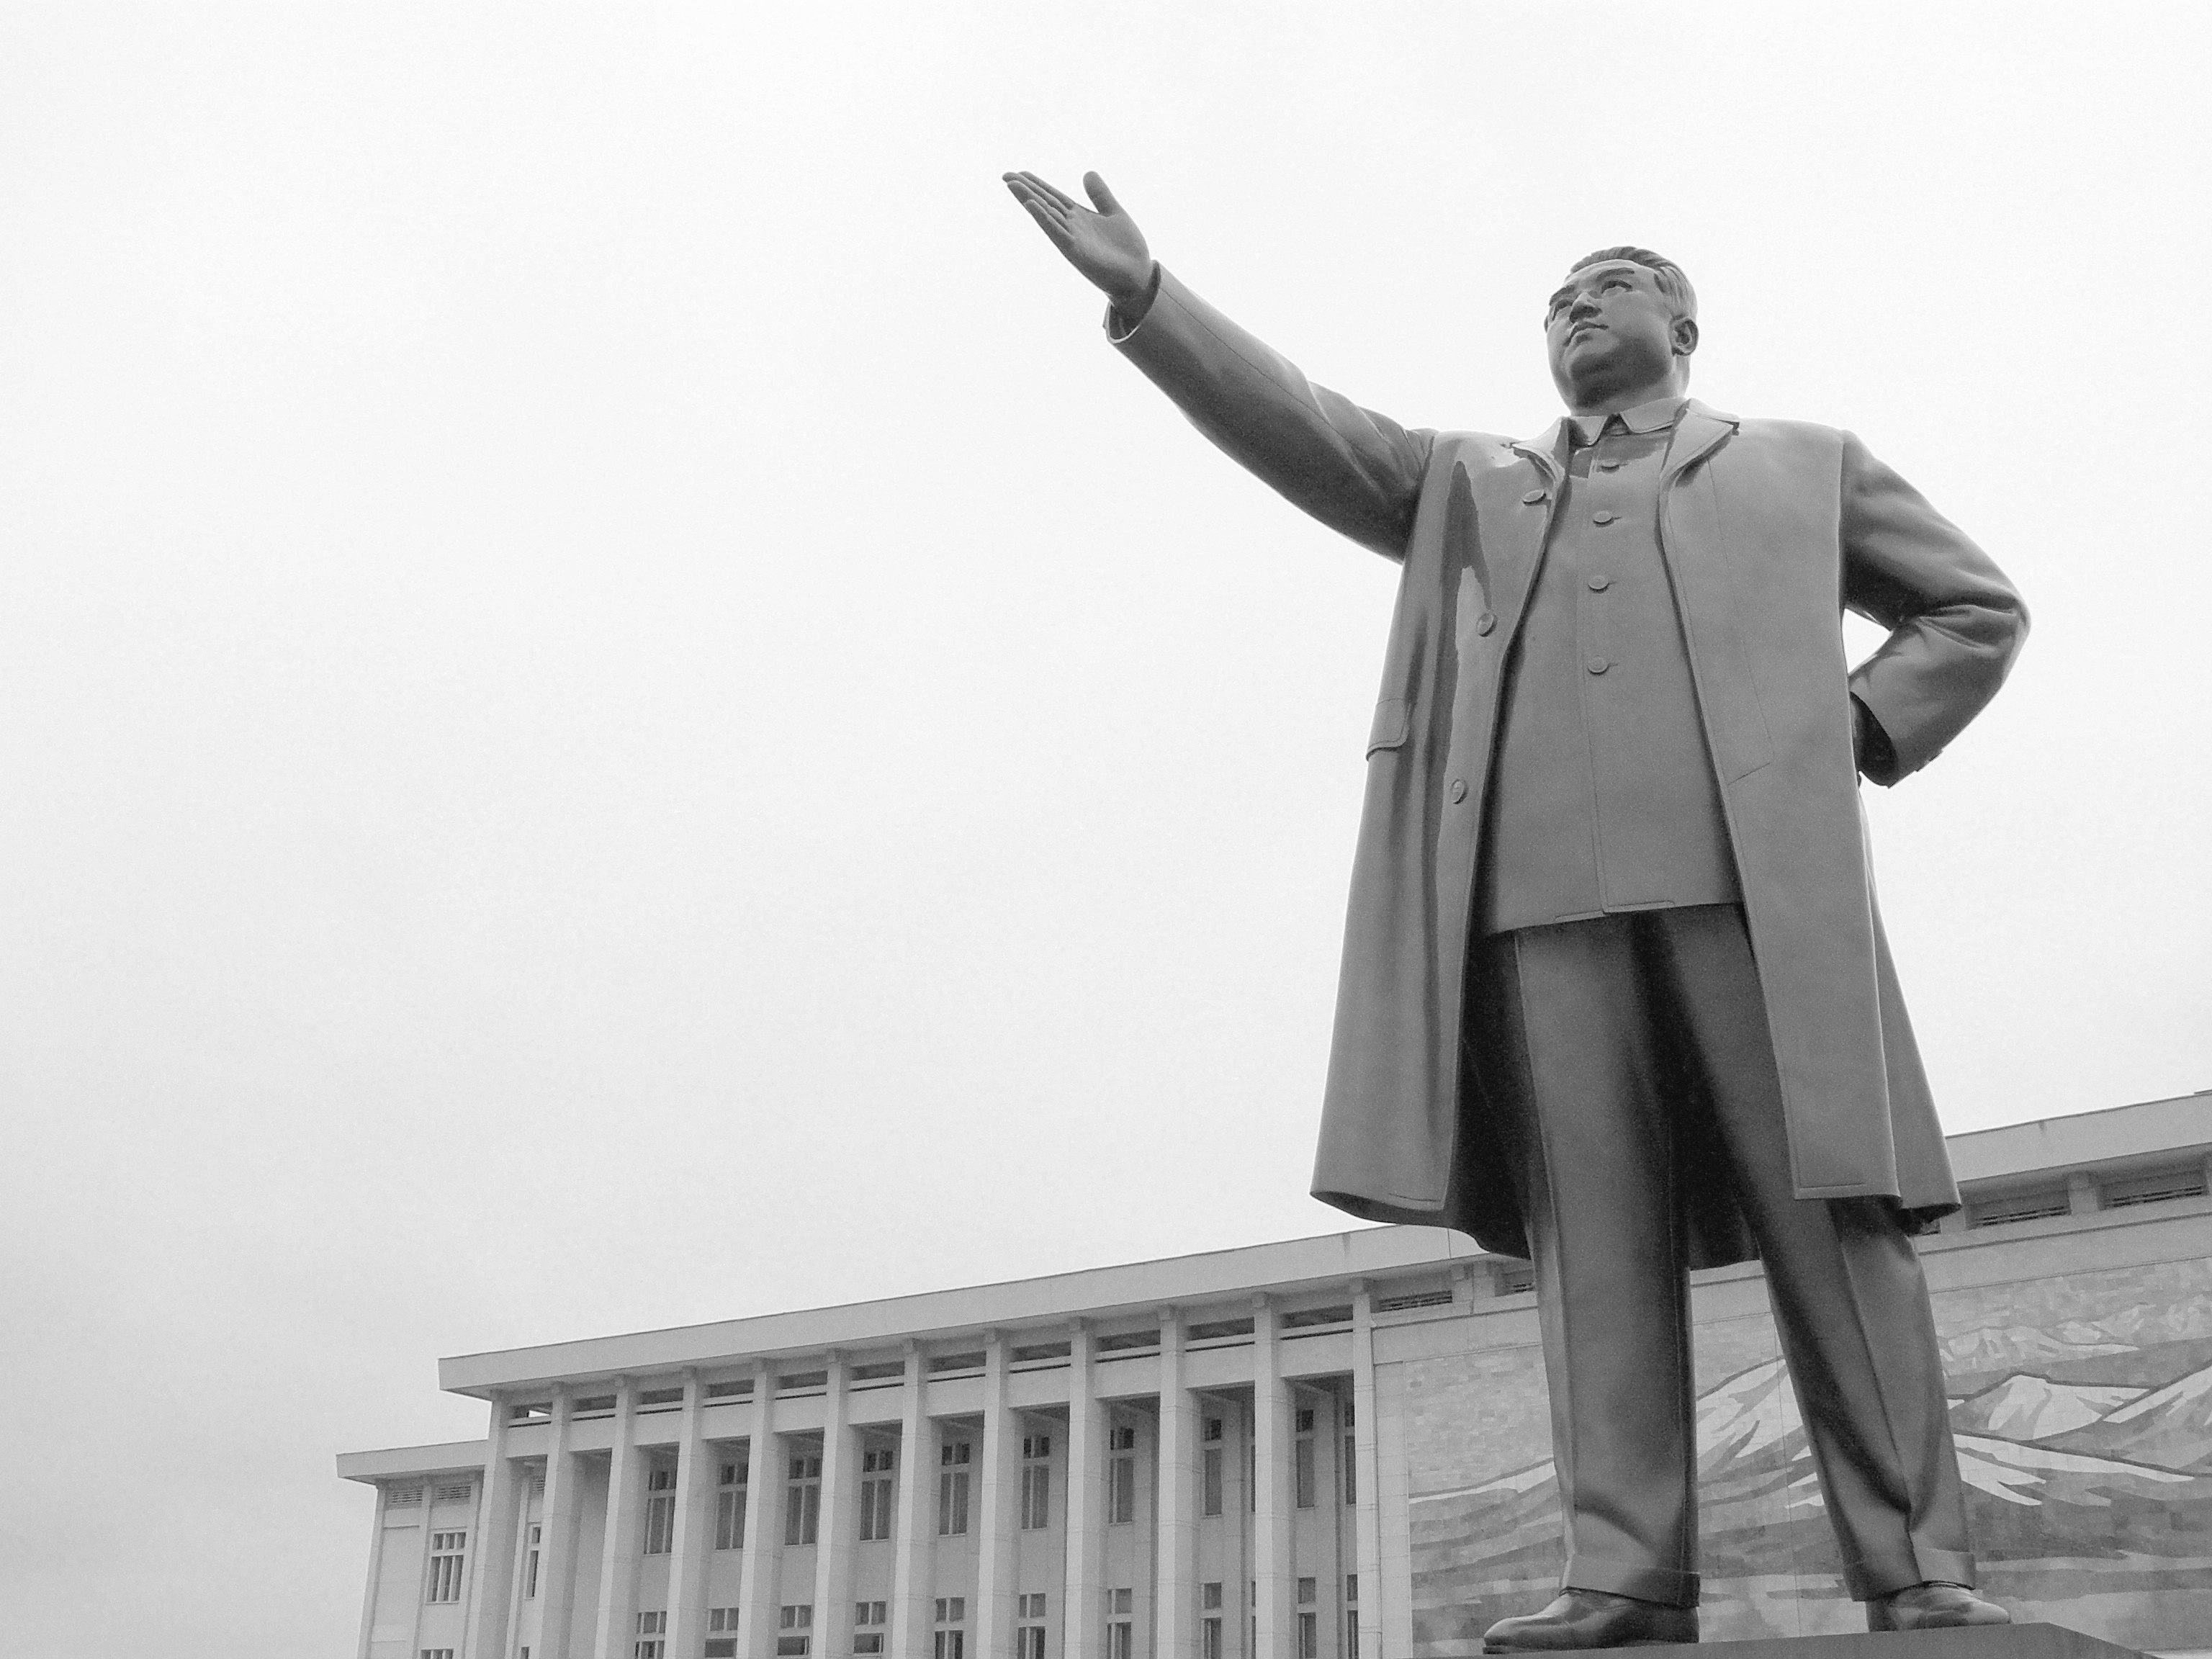 General 3072x2304 statue political figure history Kim Il Sung monochrome chubby men Asia Asian North Korea dictators